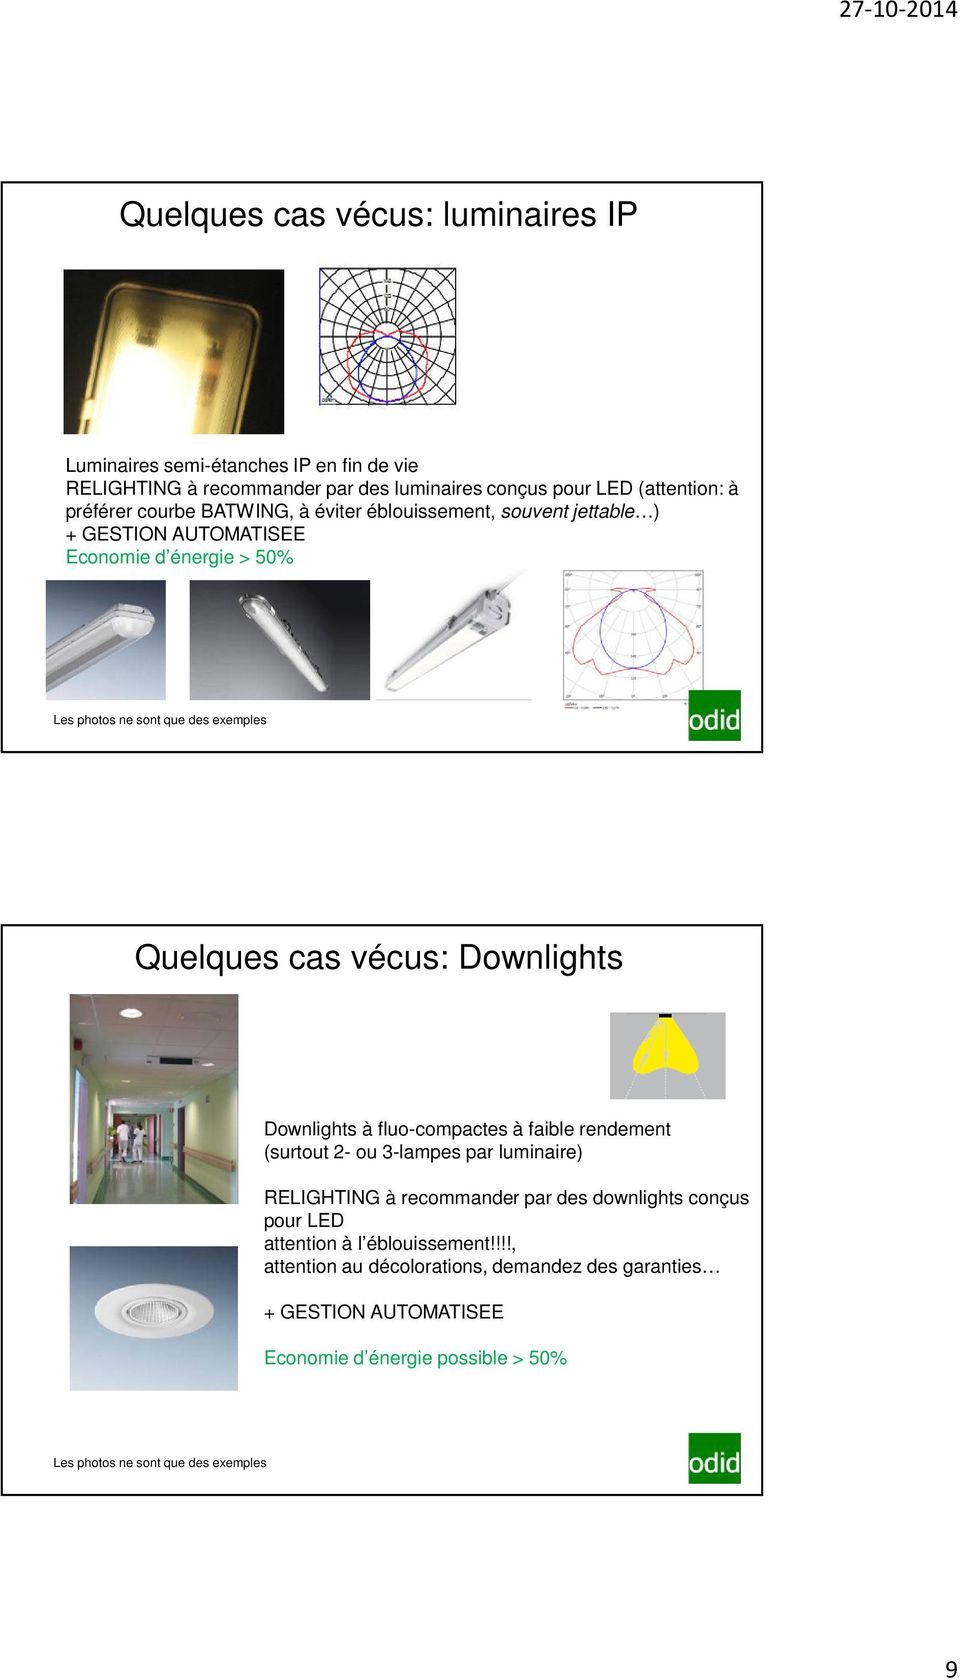 Downlights Downlights à fluo-compactes à faible rendement (surtout 2- ou 3-lampes par luminaire) RELIGHTING à recommander par des downlights conçus pour LED